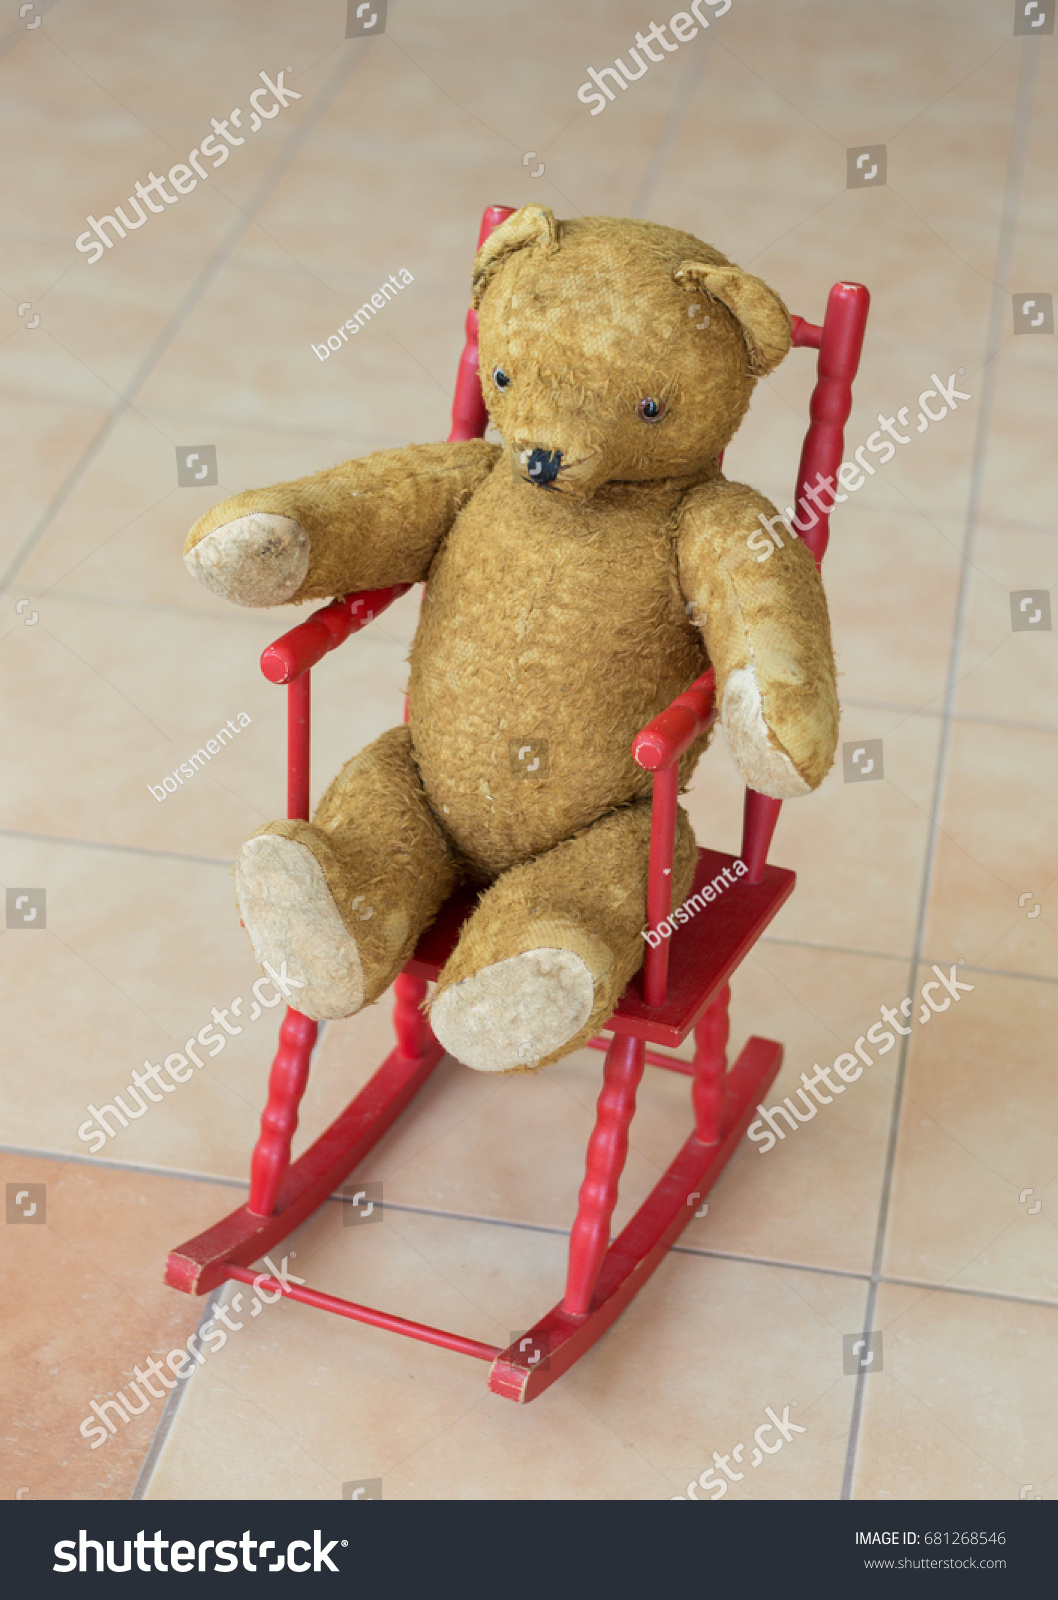 rocking chair for teddy bear